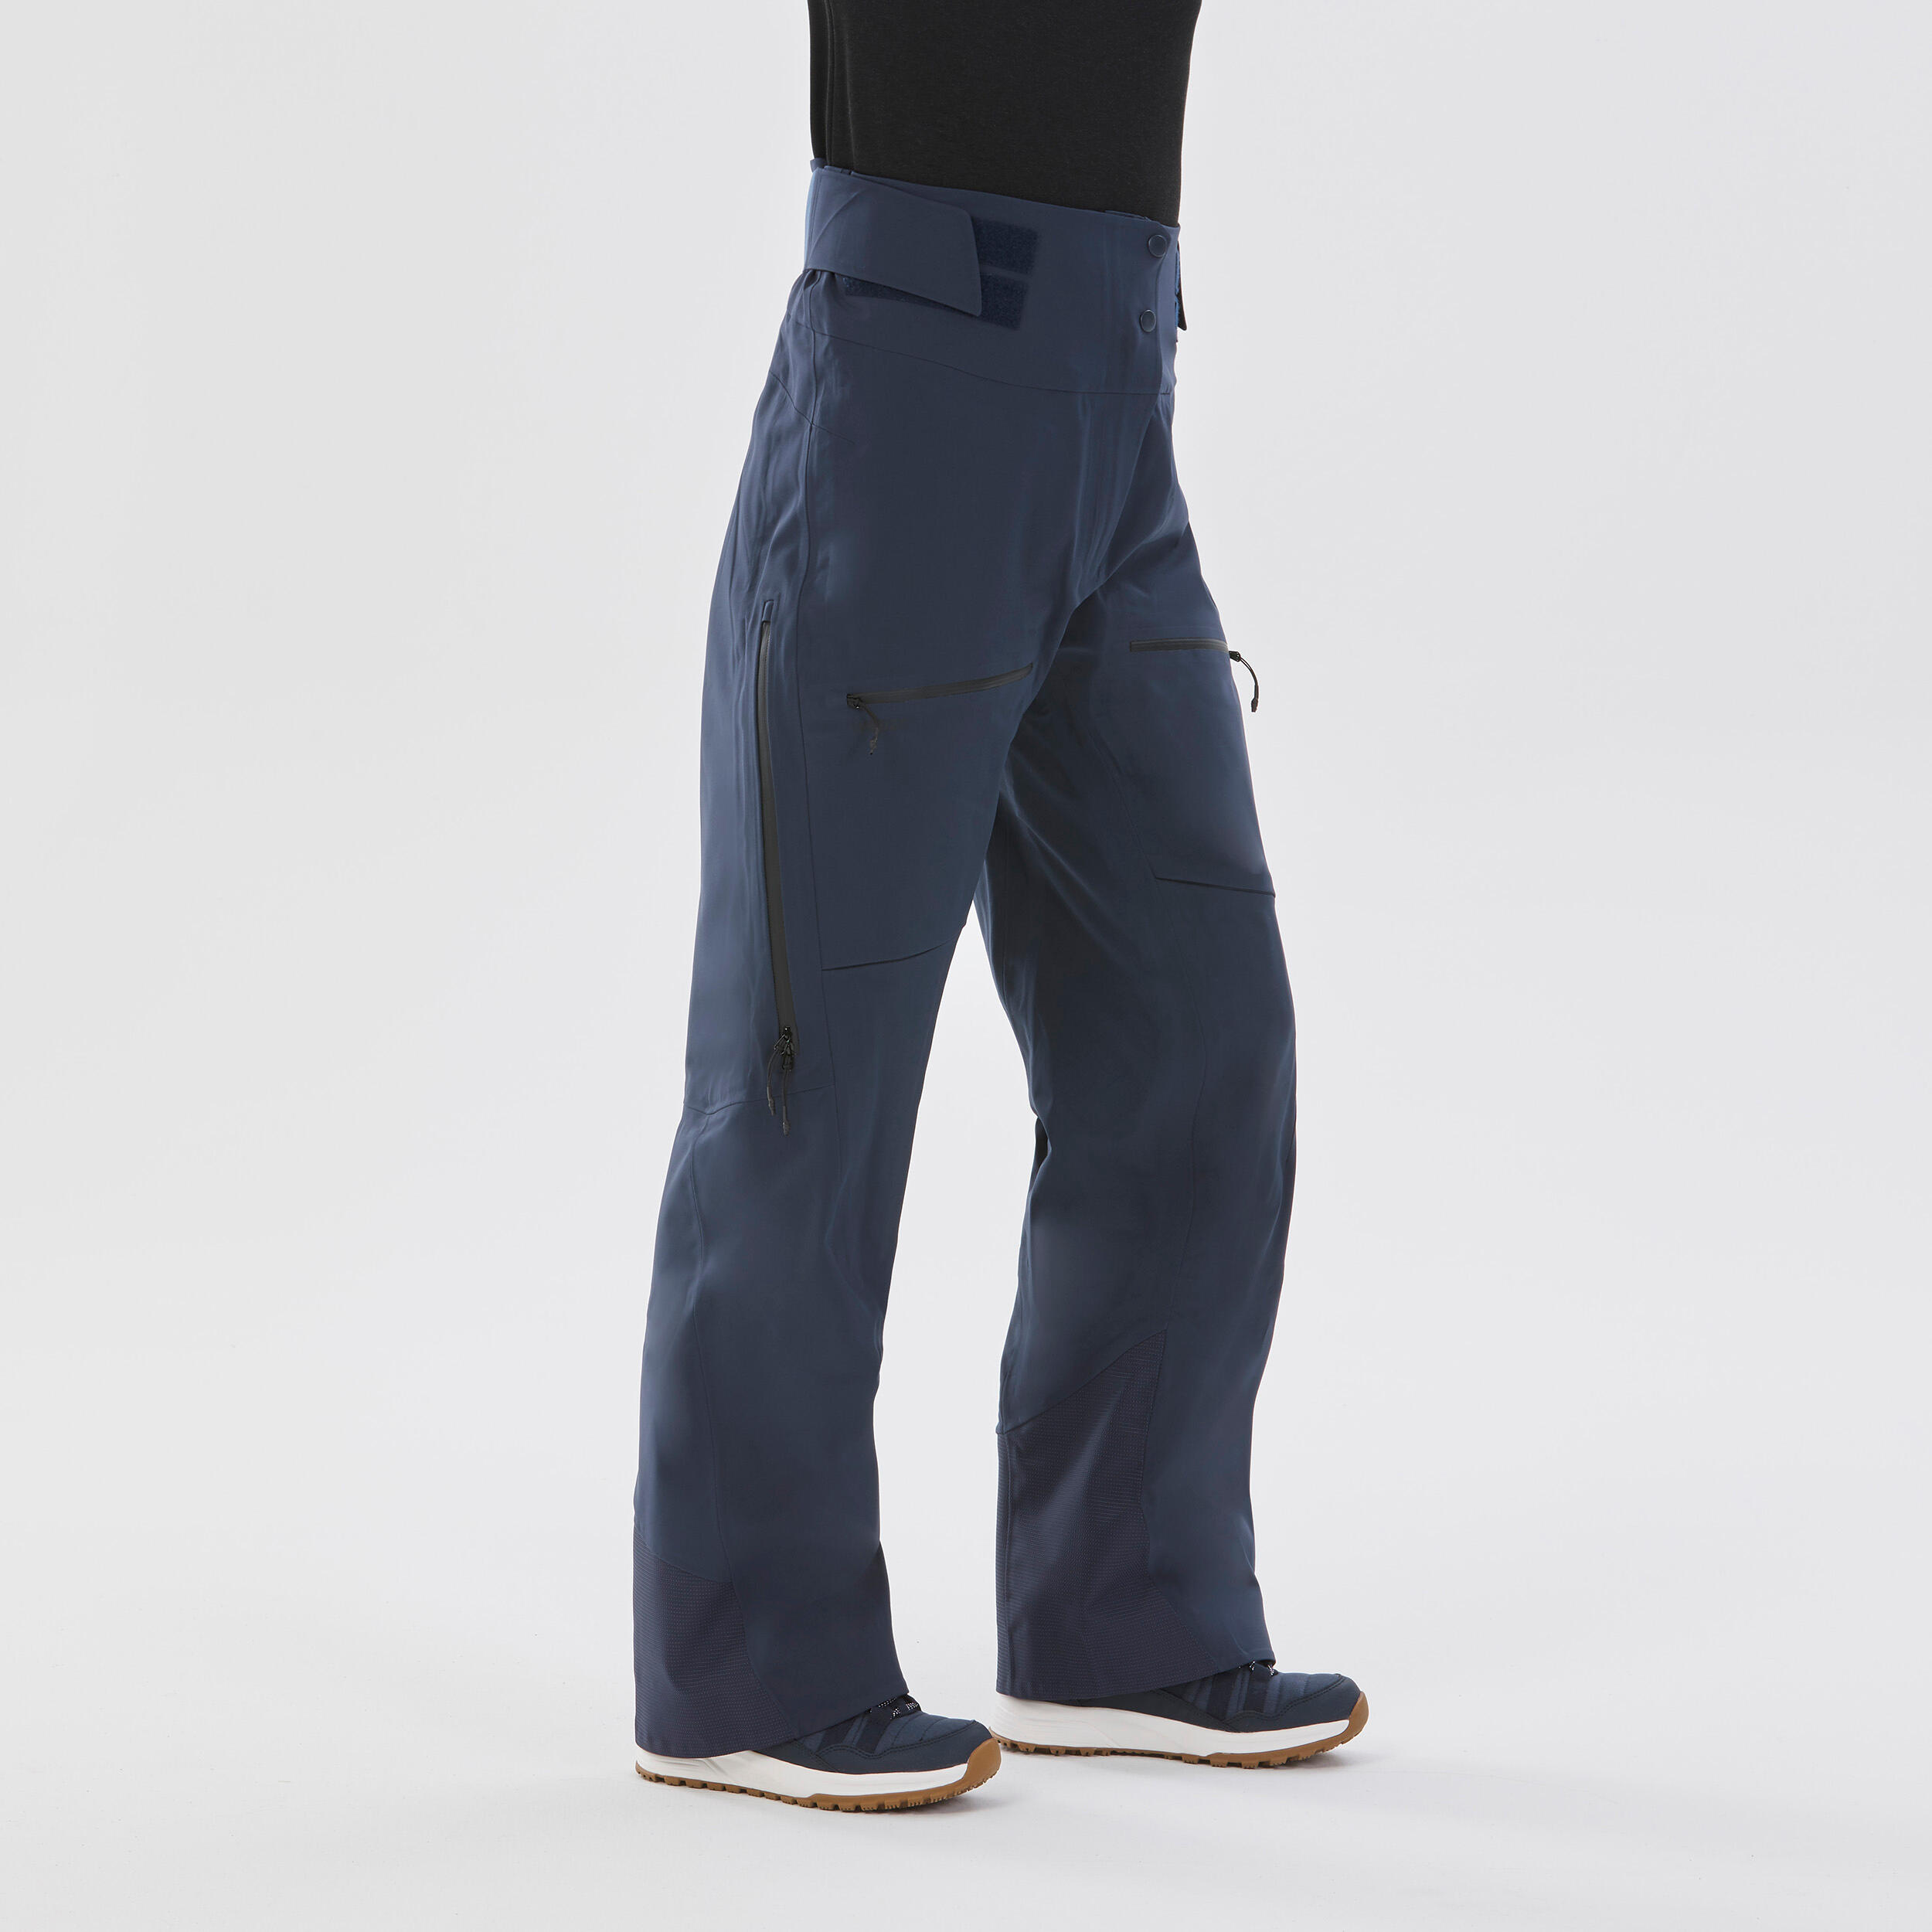 Women’s Ski Trousers FR500 - Navy Blue 4/14